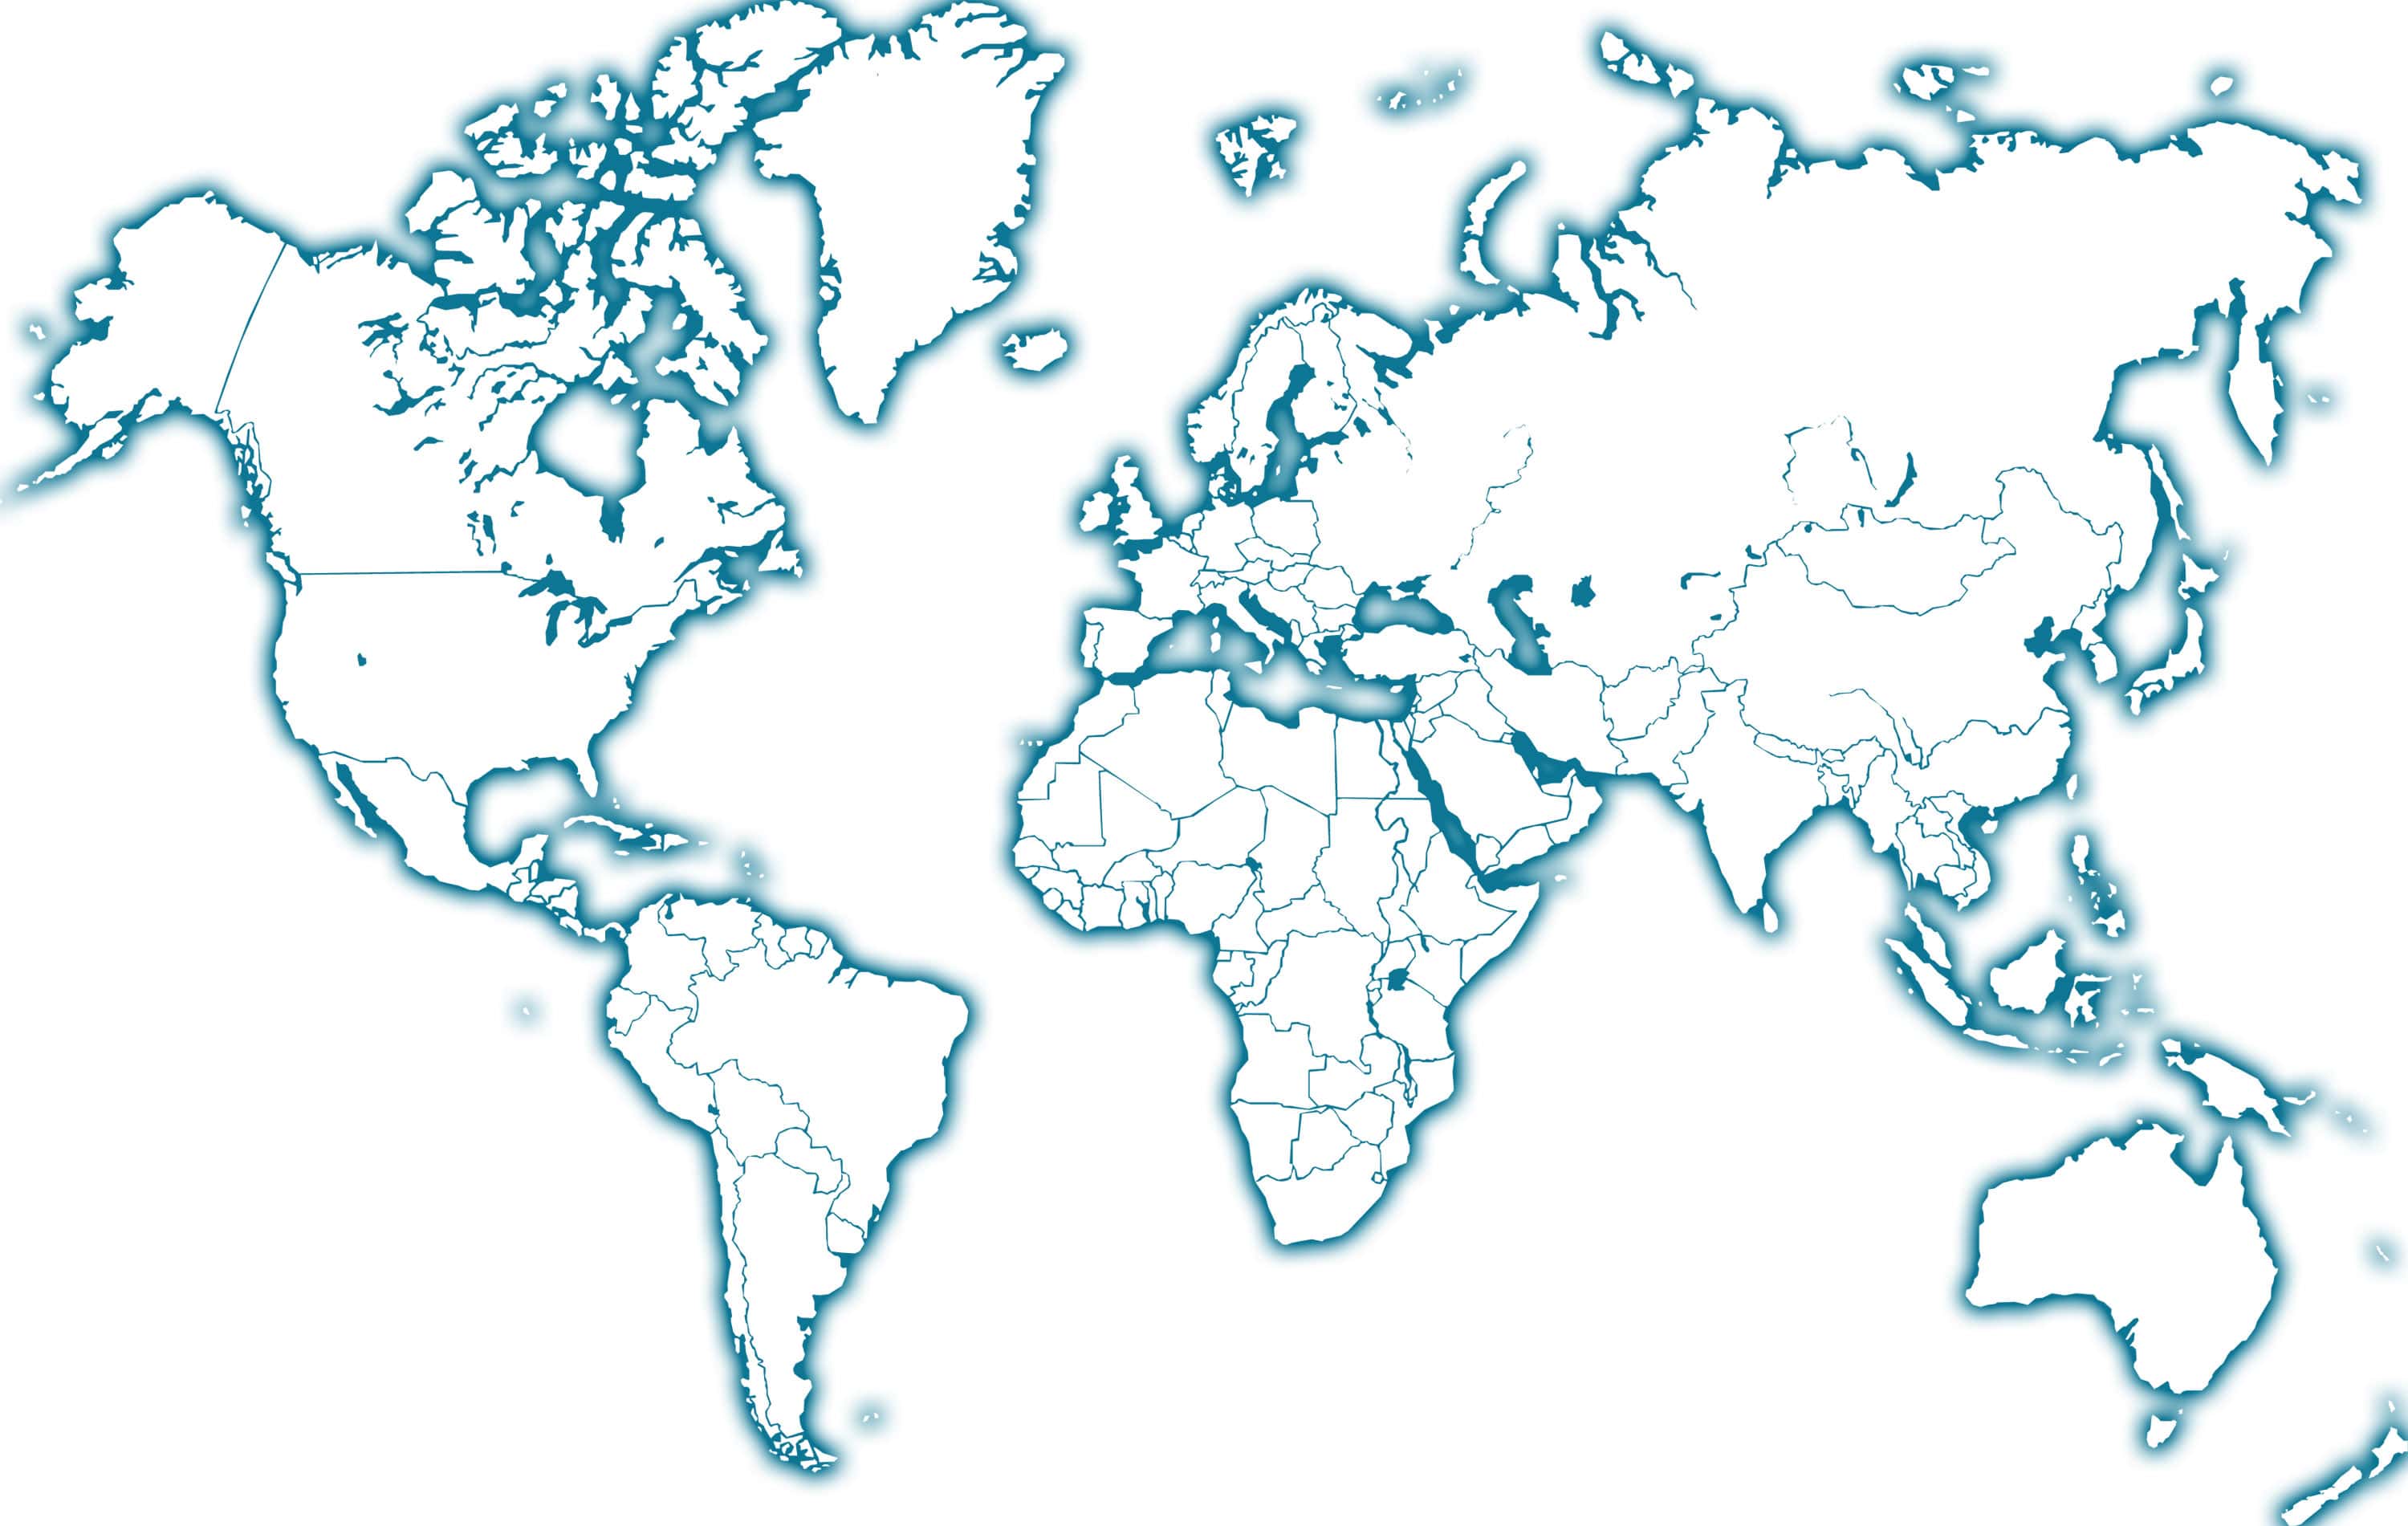 Résultat de recherche d'images pour "carte du monde"